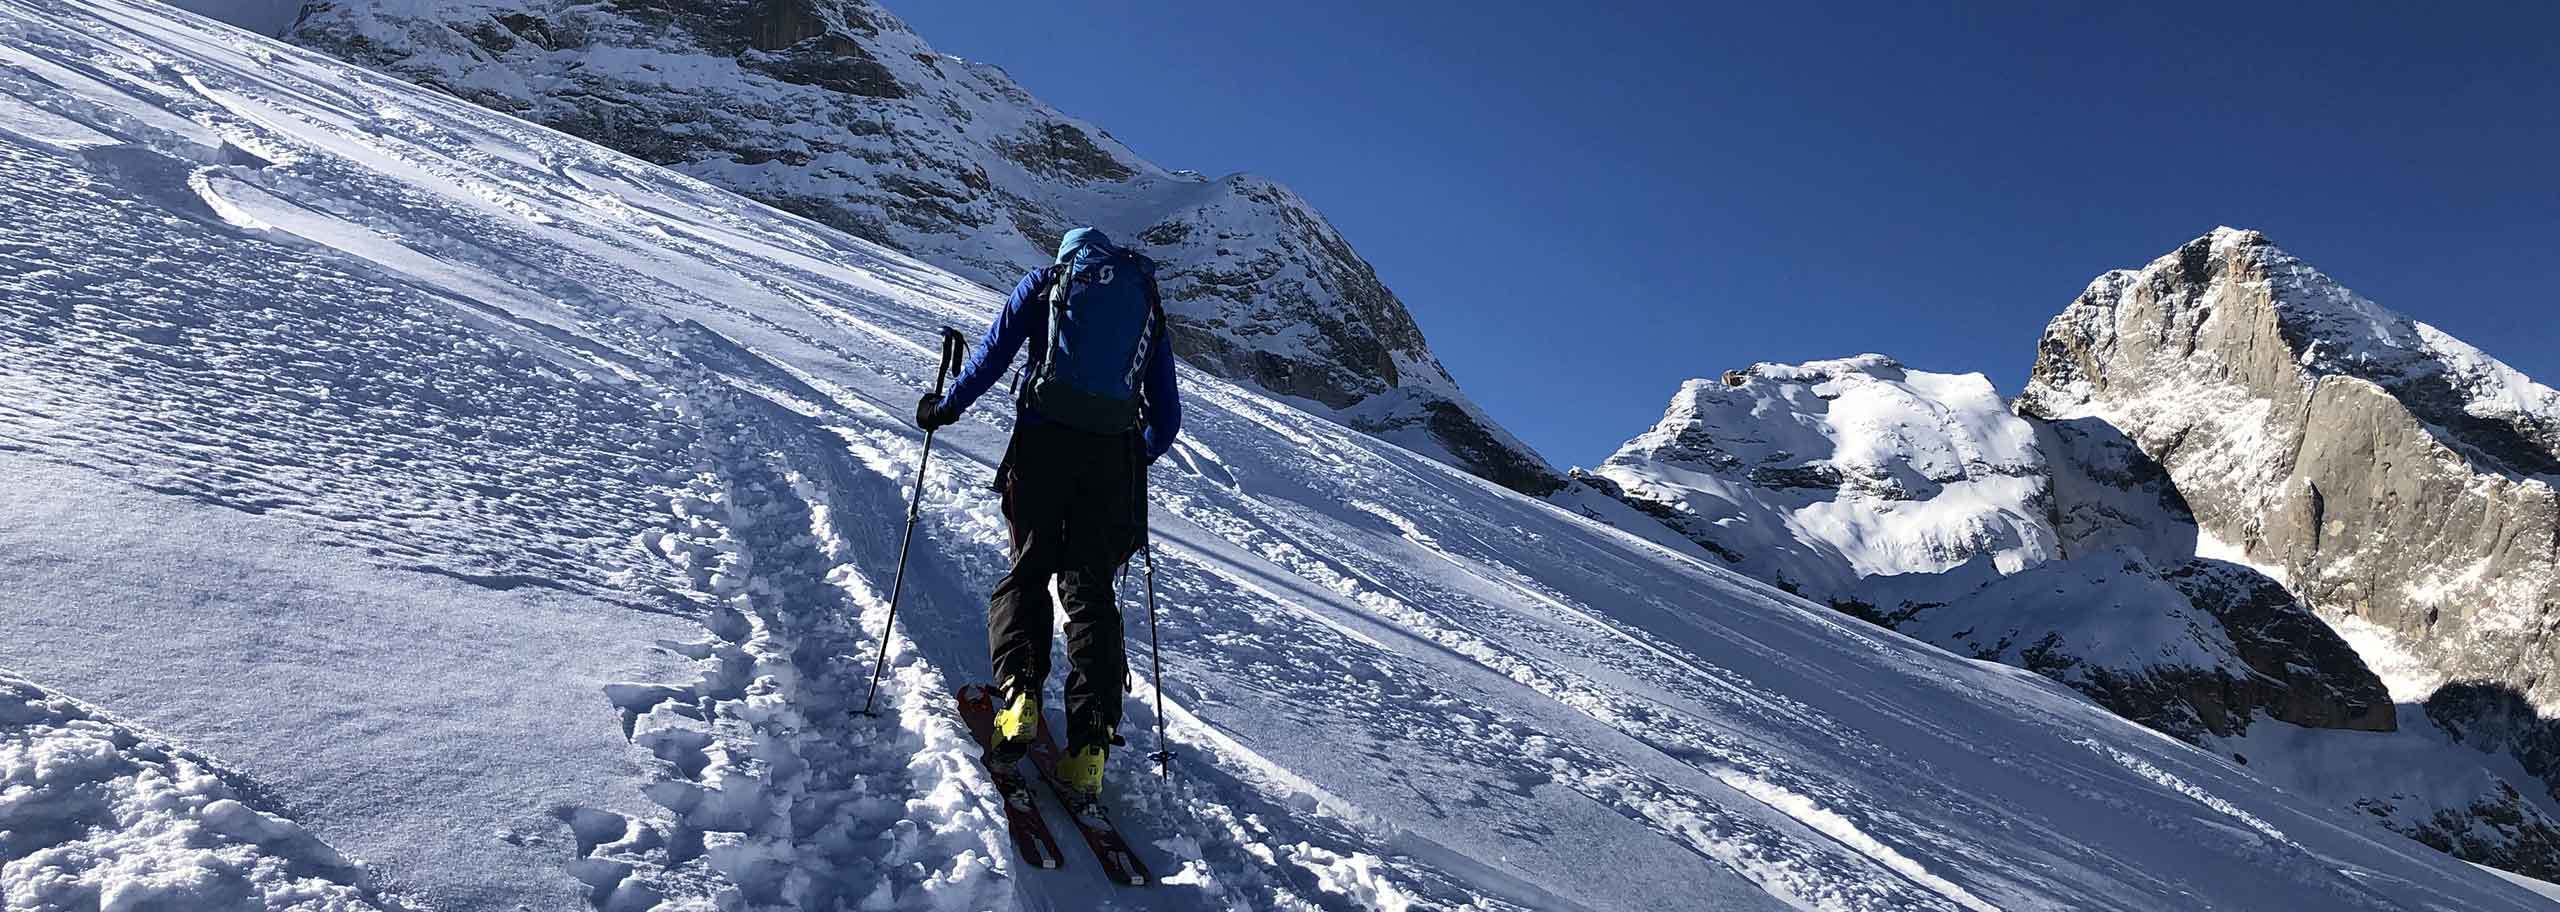 Sci Alpinismo in Marmolada, Escursioni e Corsi Sci Alpinistici